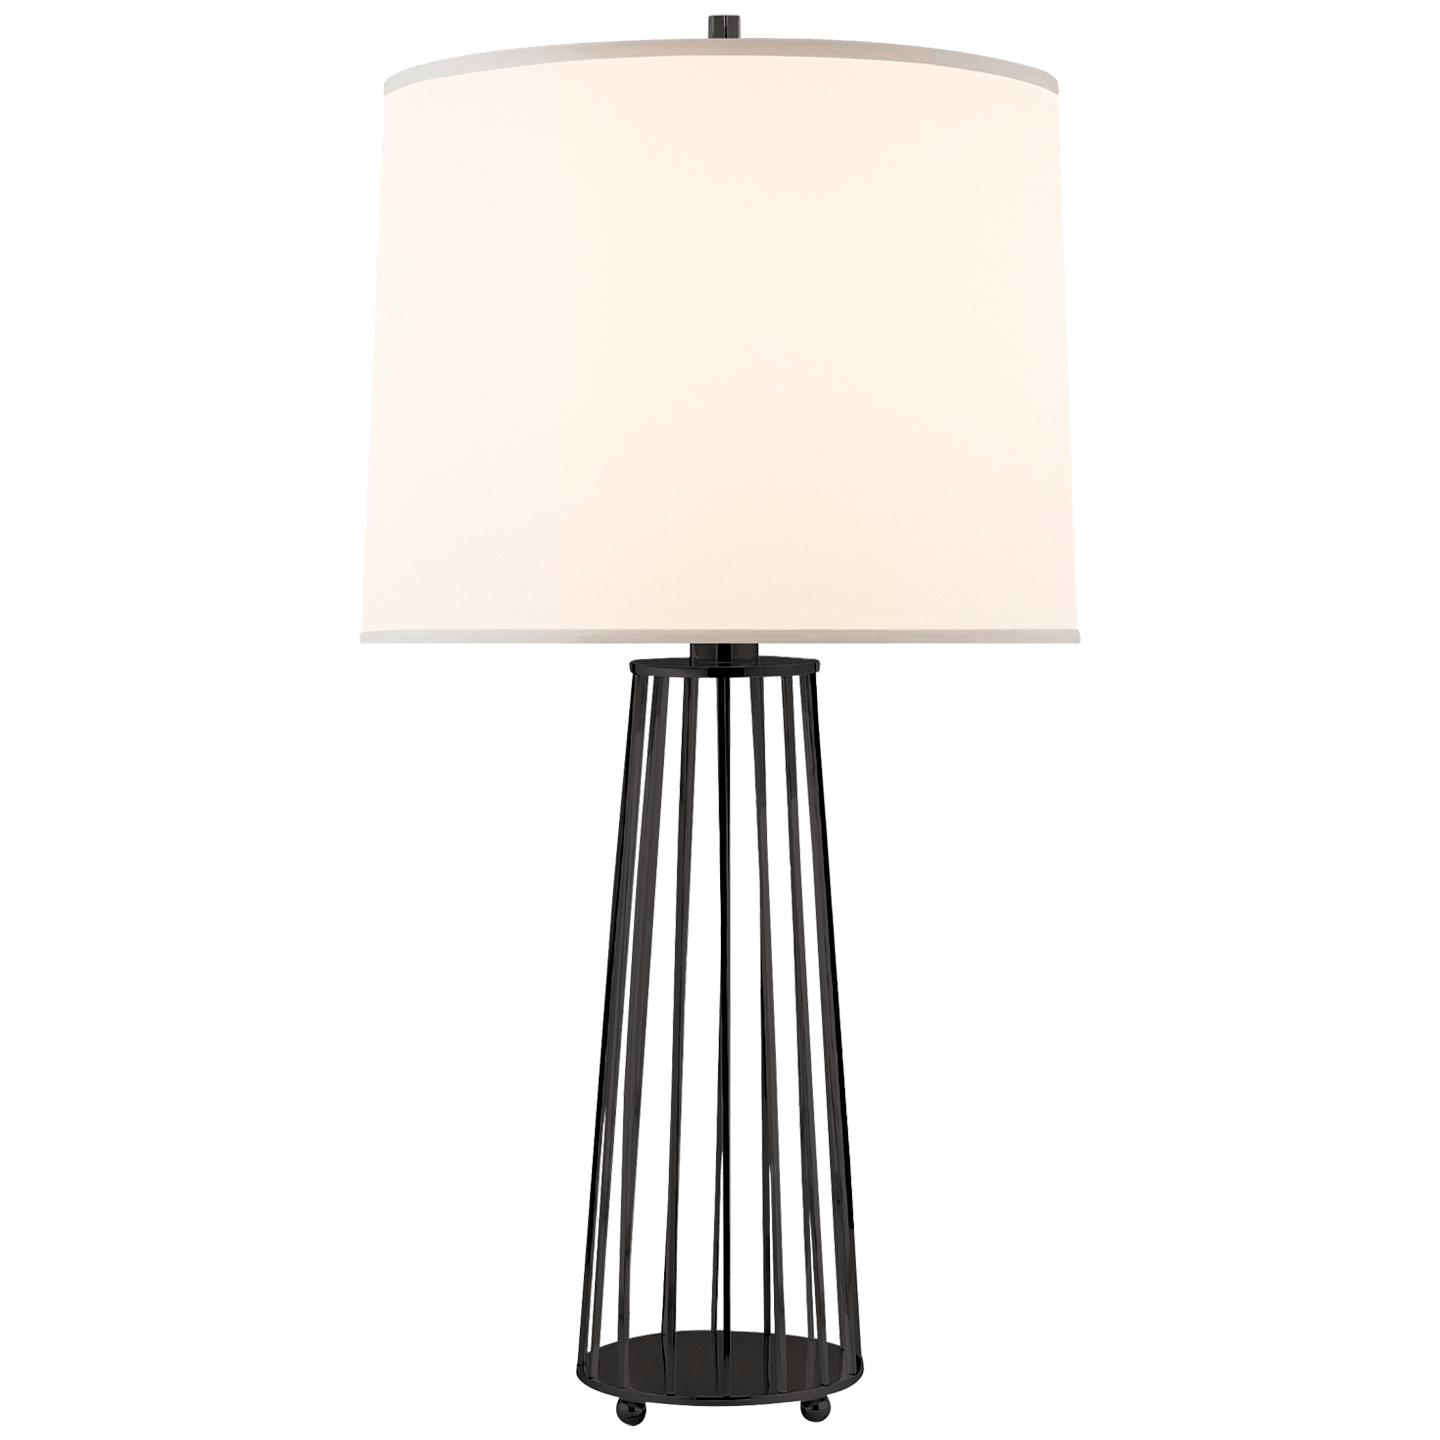 Купить Настольная лампа Carousel Table Lamp в интернет-магазине roooms.ru